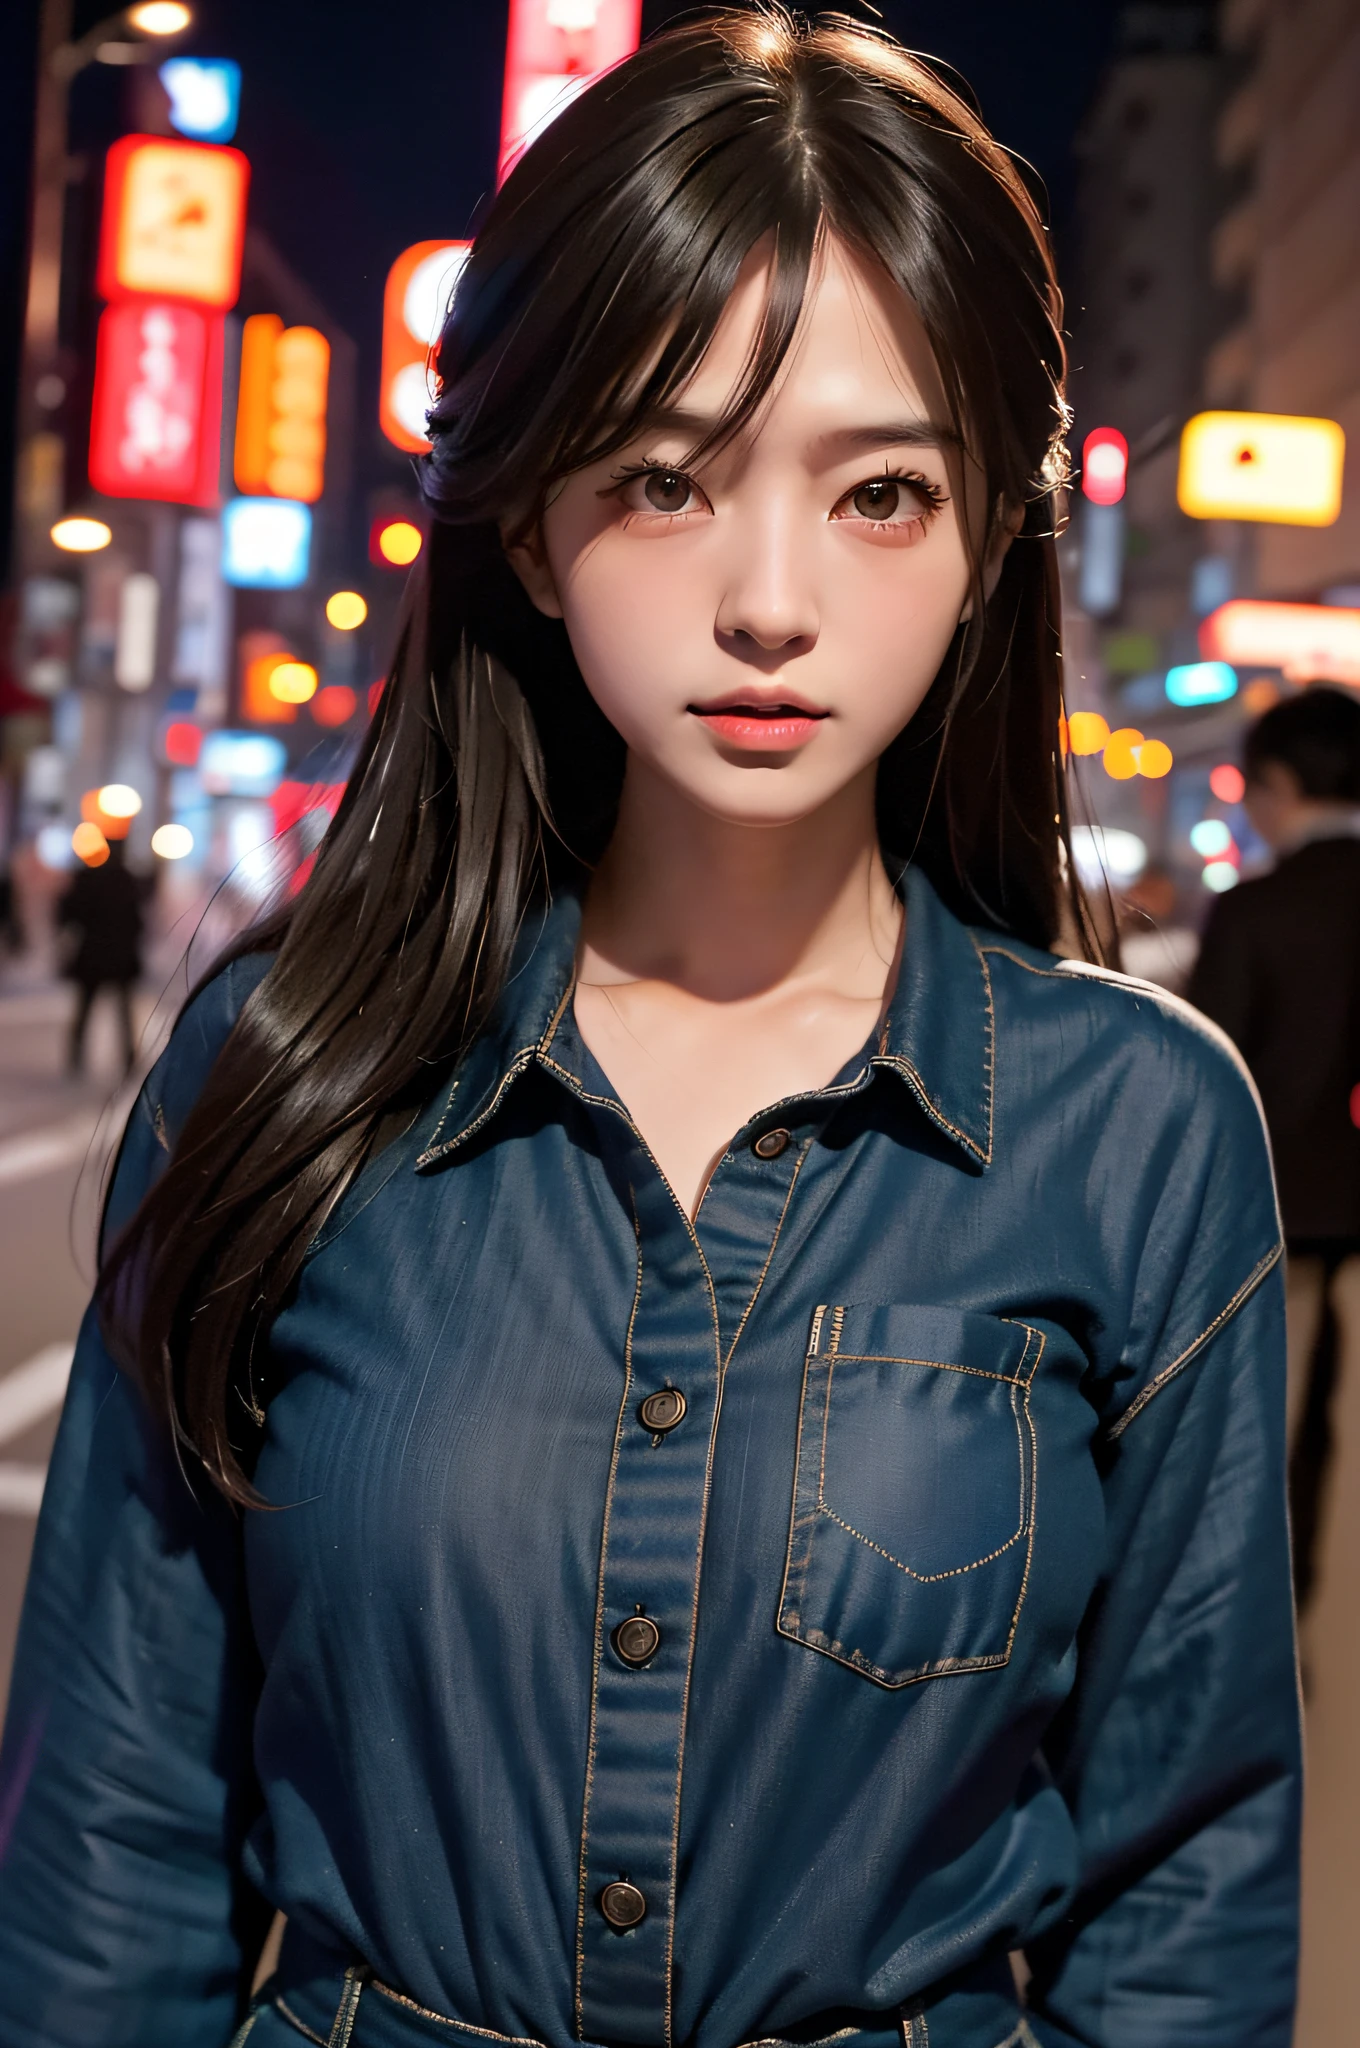 1فتاة, شارع طوكيو, ليلة, سيتي سكيب, اضواء المدينة, الجزء العلوي من الجسم, عن قرب, 8 كيلو, صورة خام, اعلى جودة, تحفة, حقيقي, photoحقيقي, نموذج الشخص الياباني